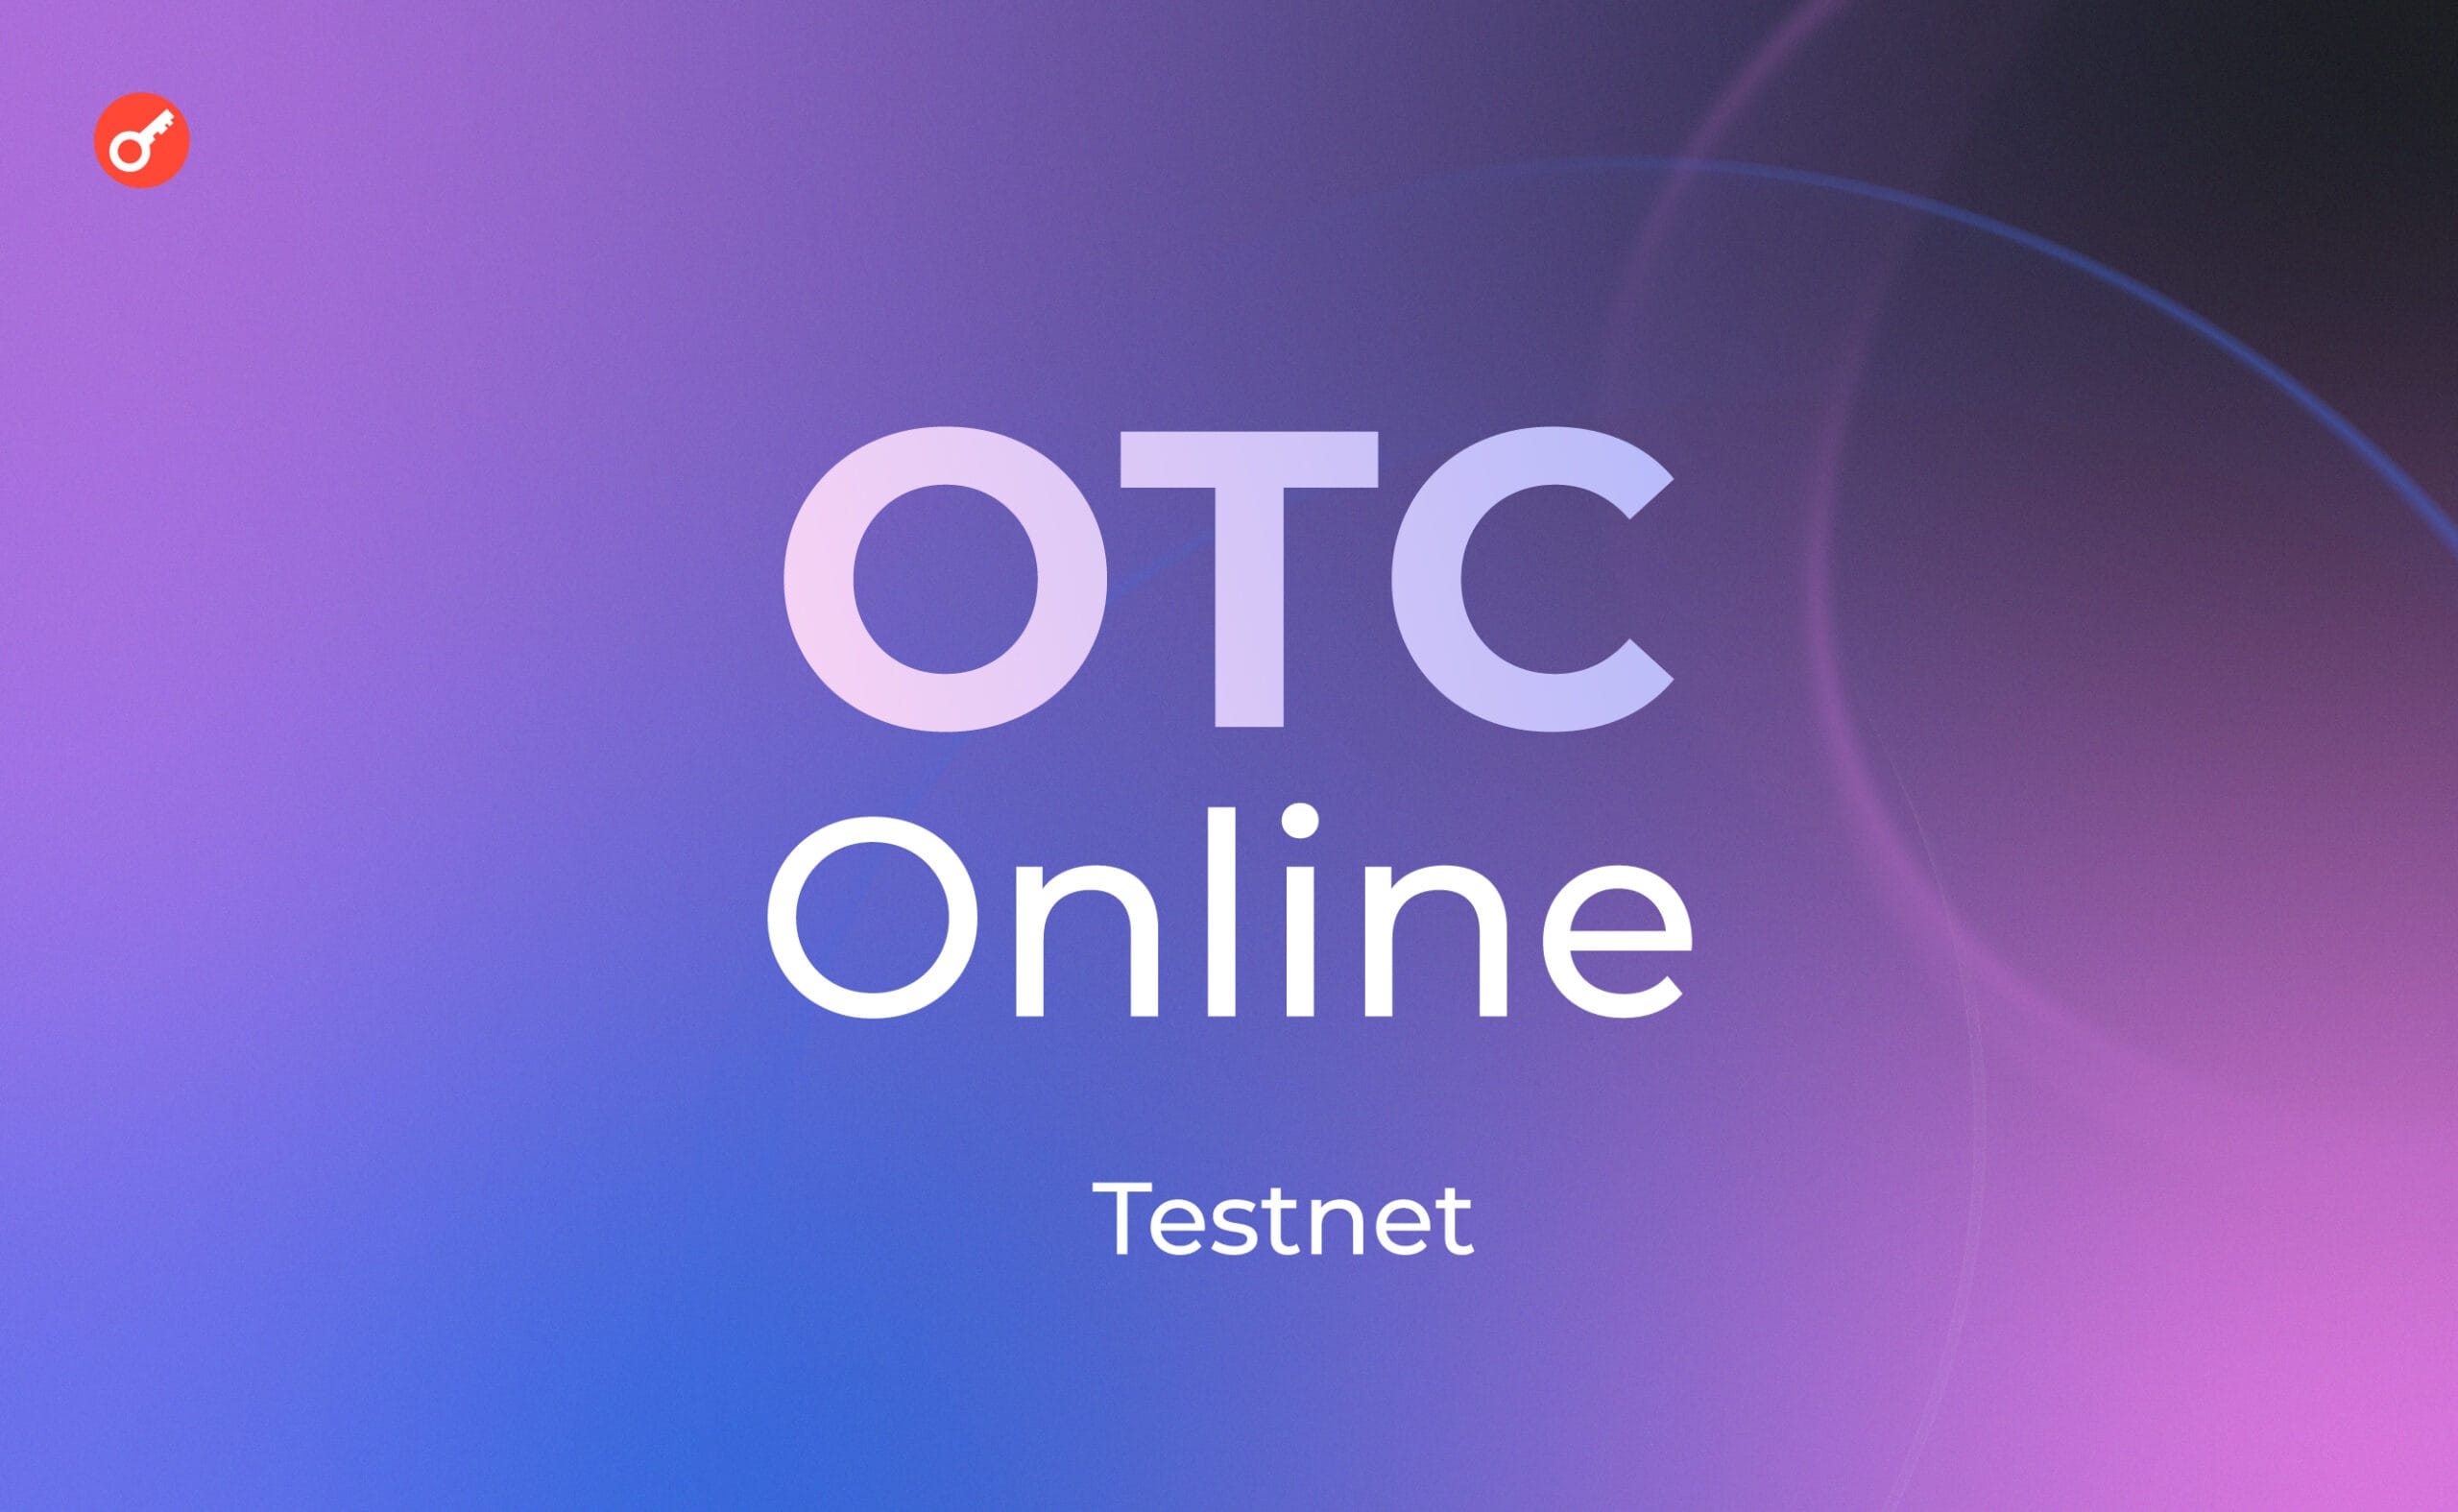 OTCOnline: тестируем новую площадку безопасных ОТС сделок. Заглавный коллаж статьи.